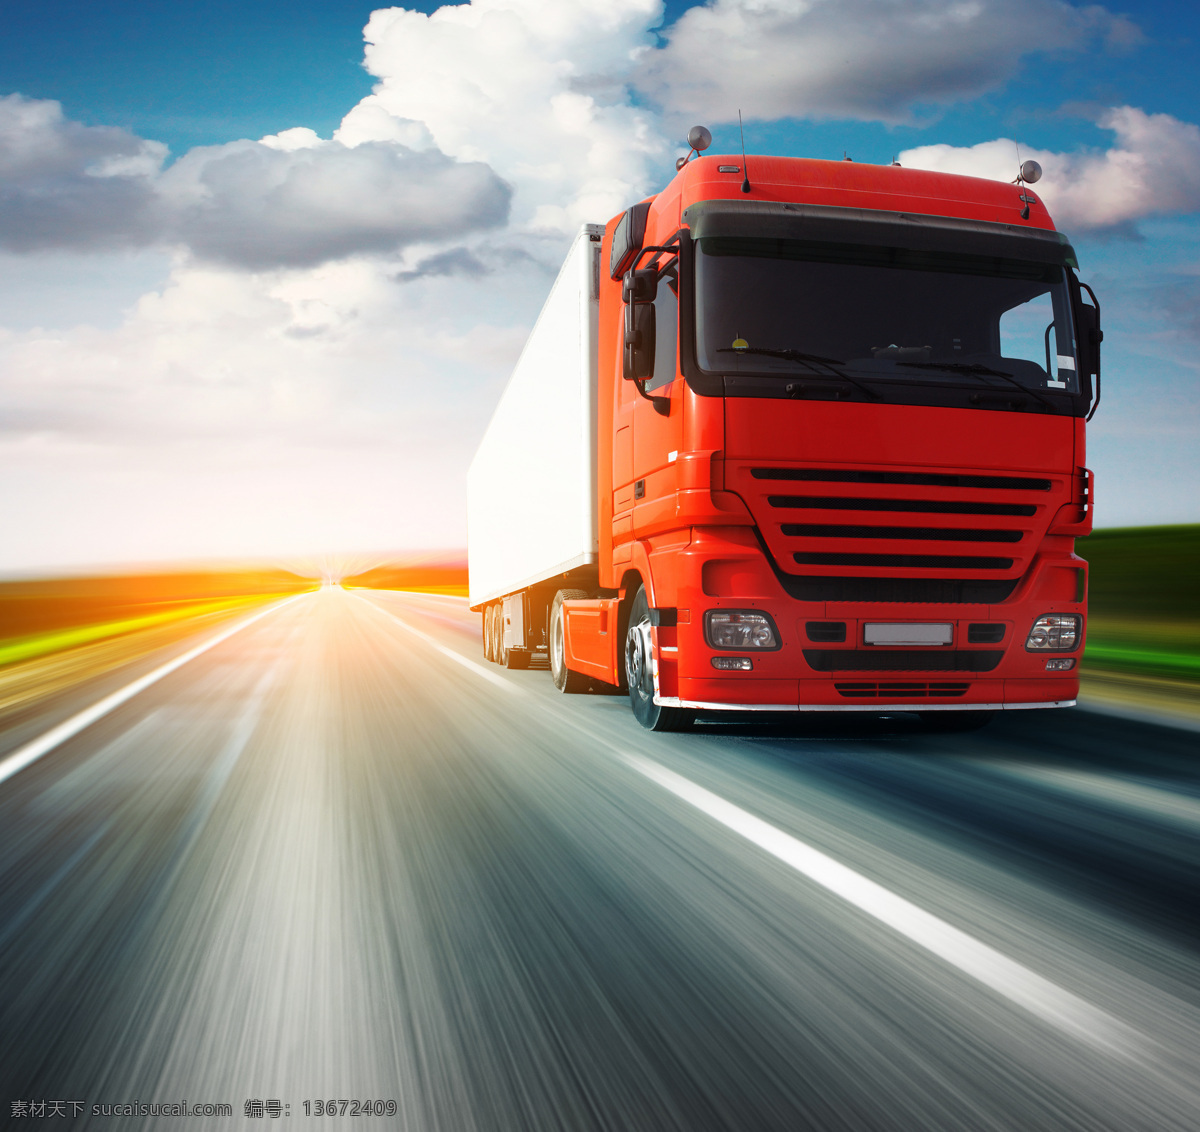 高速 行驶 货车 卡车 载货汽车 货运 运输 长途运输 交通 箱货 交通工具 汽车图片 现代科技